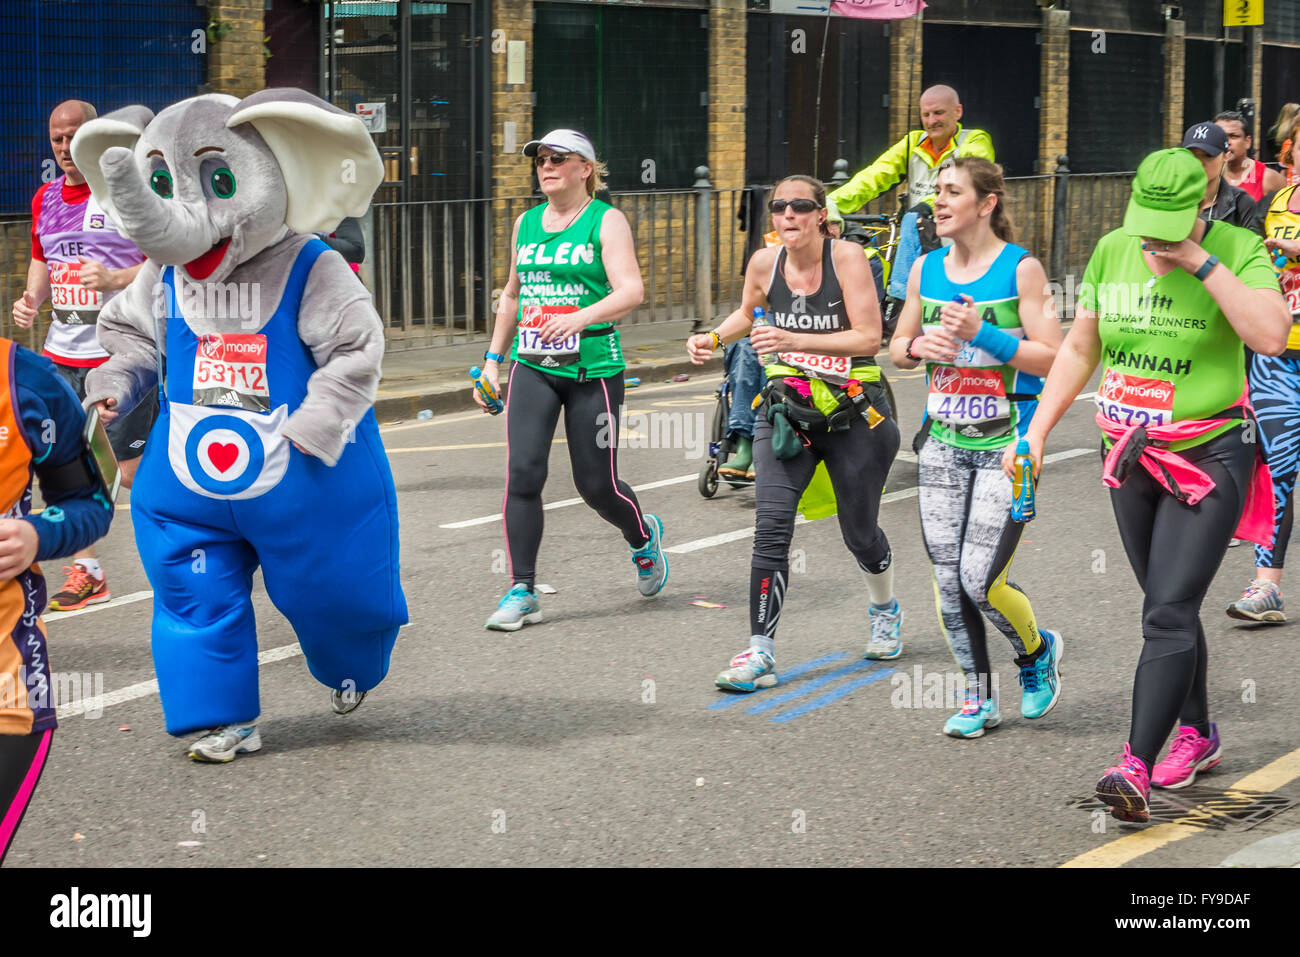 Londres, Royaume-Uni. 24 avril, 2016. Marathon de Londres 2016. Ossature en grand costume. Costume d'éléphant Crédit : Elena/Chaykina Alamy Live News Banque D'Images